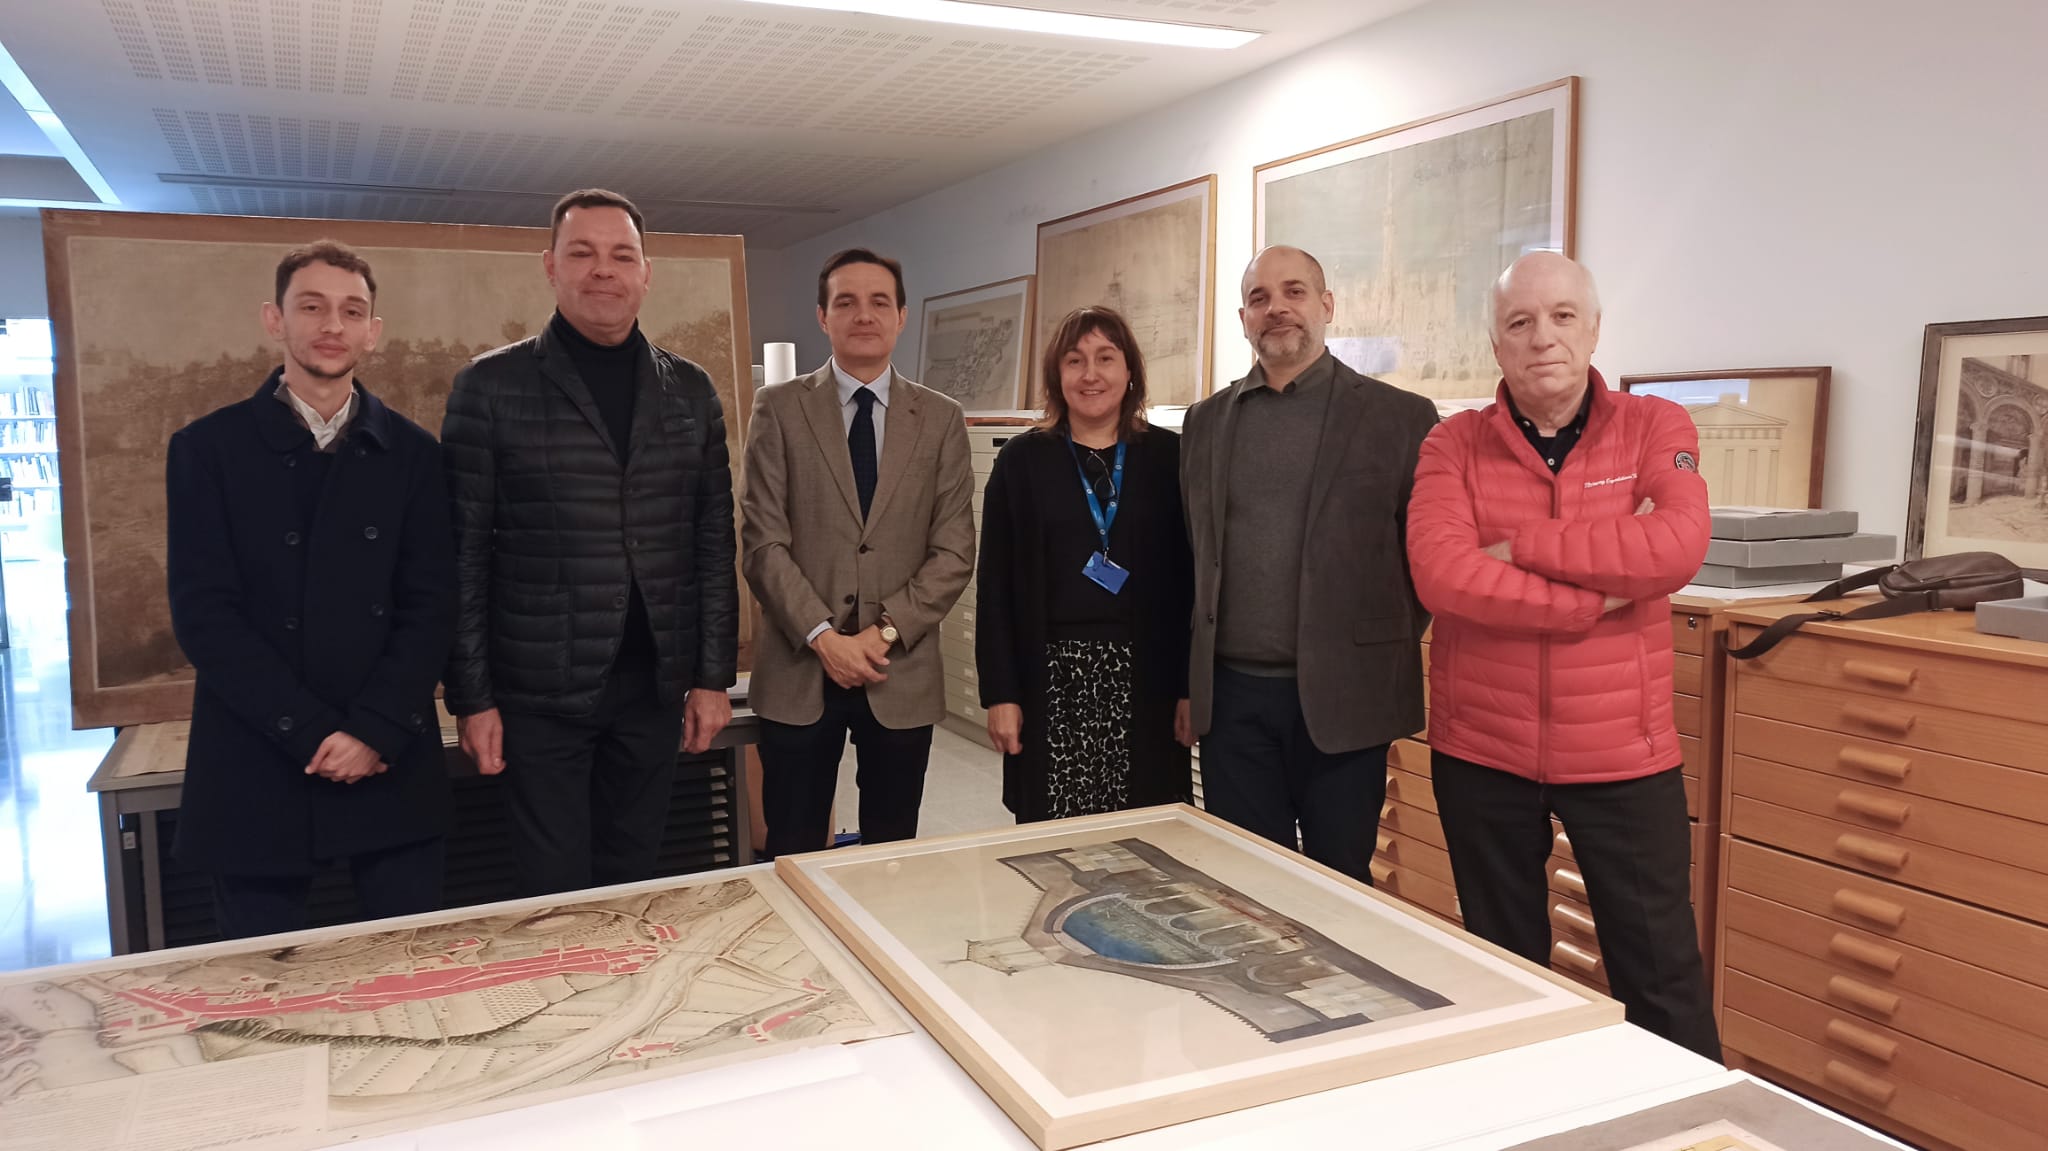 La delegación leonesa con representantes de la Real Cátedra Gaudí de Barcelona. | L.N.C.